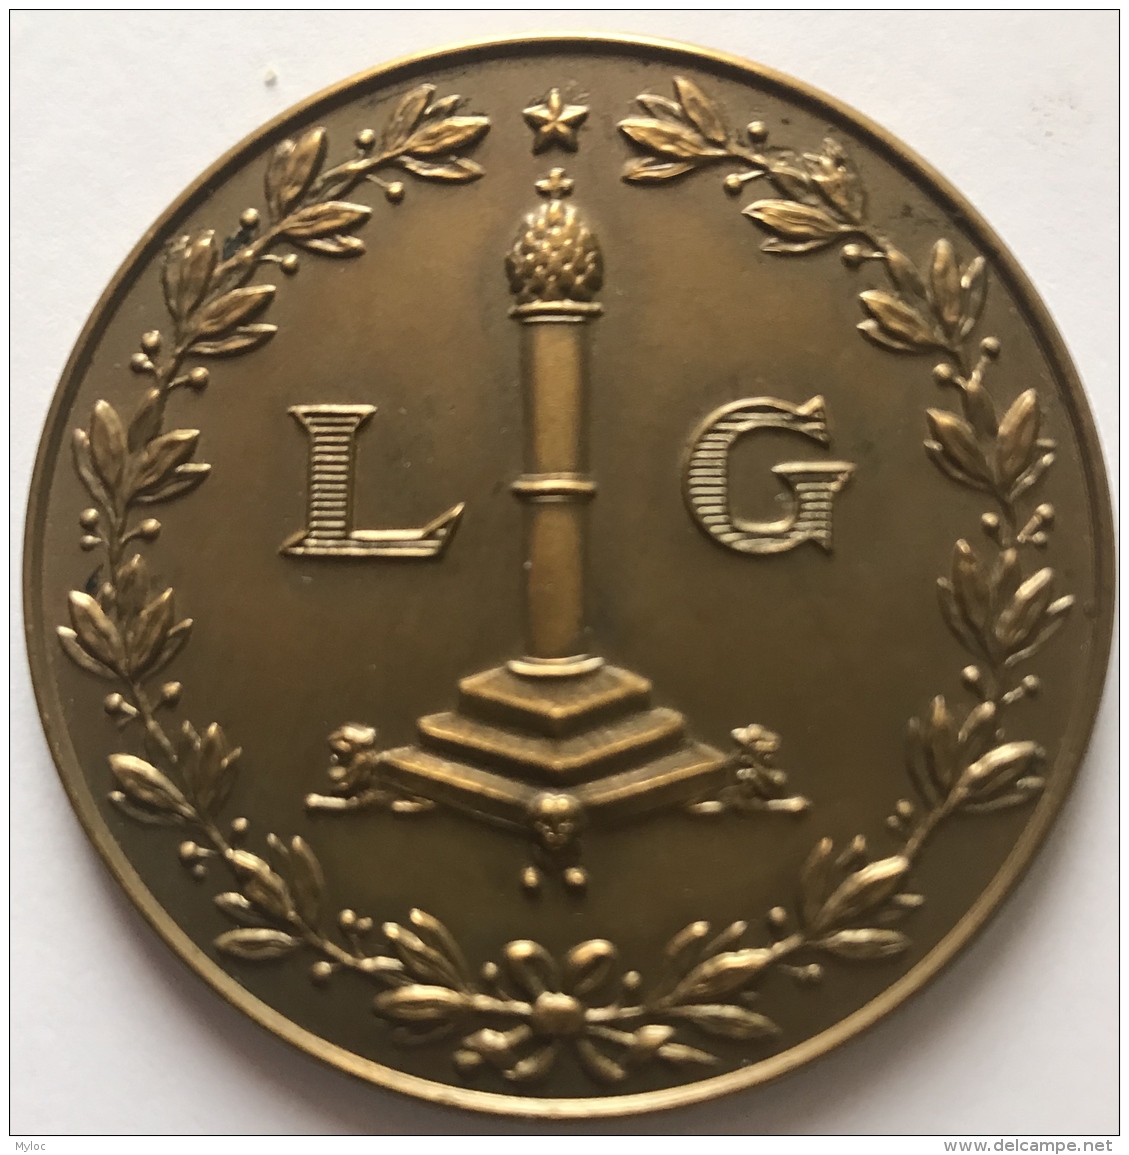 Médaille. Chambre Belge Des Comptables Liège. 1894-1954. 50mm  - 44 Gr - Professionals / Firms